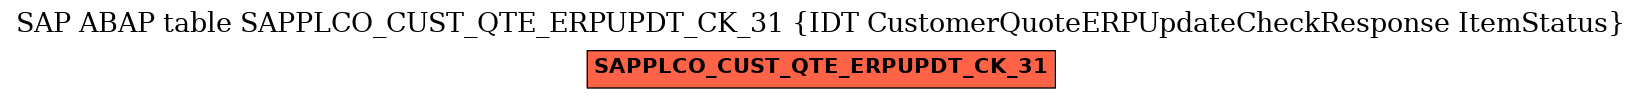 E-R Diagram for table SAPPLCO_CUST_QTE_ERPUPDT_CK_31 (IDT CustomerQuoteERPUpdateCheckResponse ItemStatus)